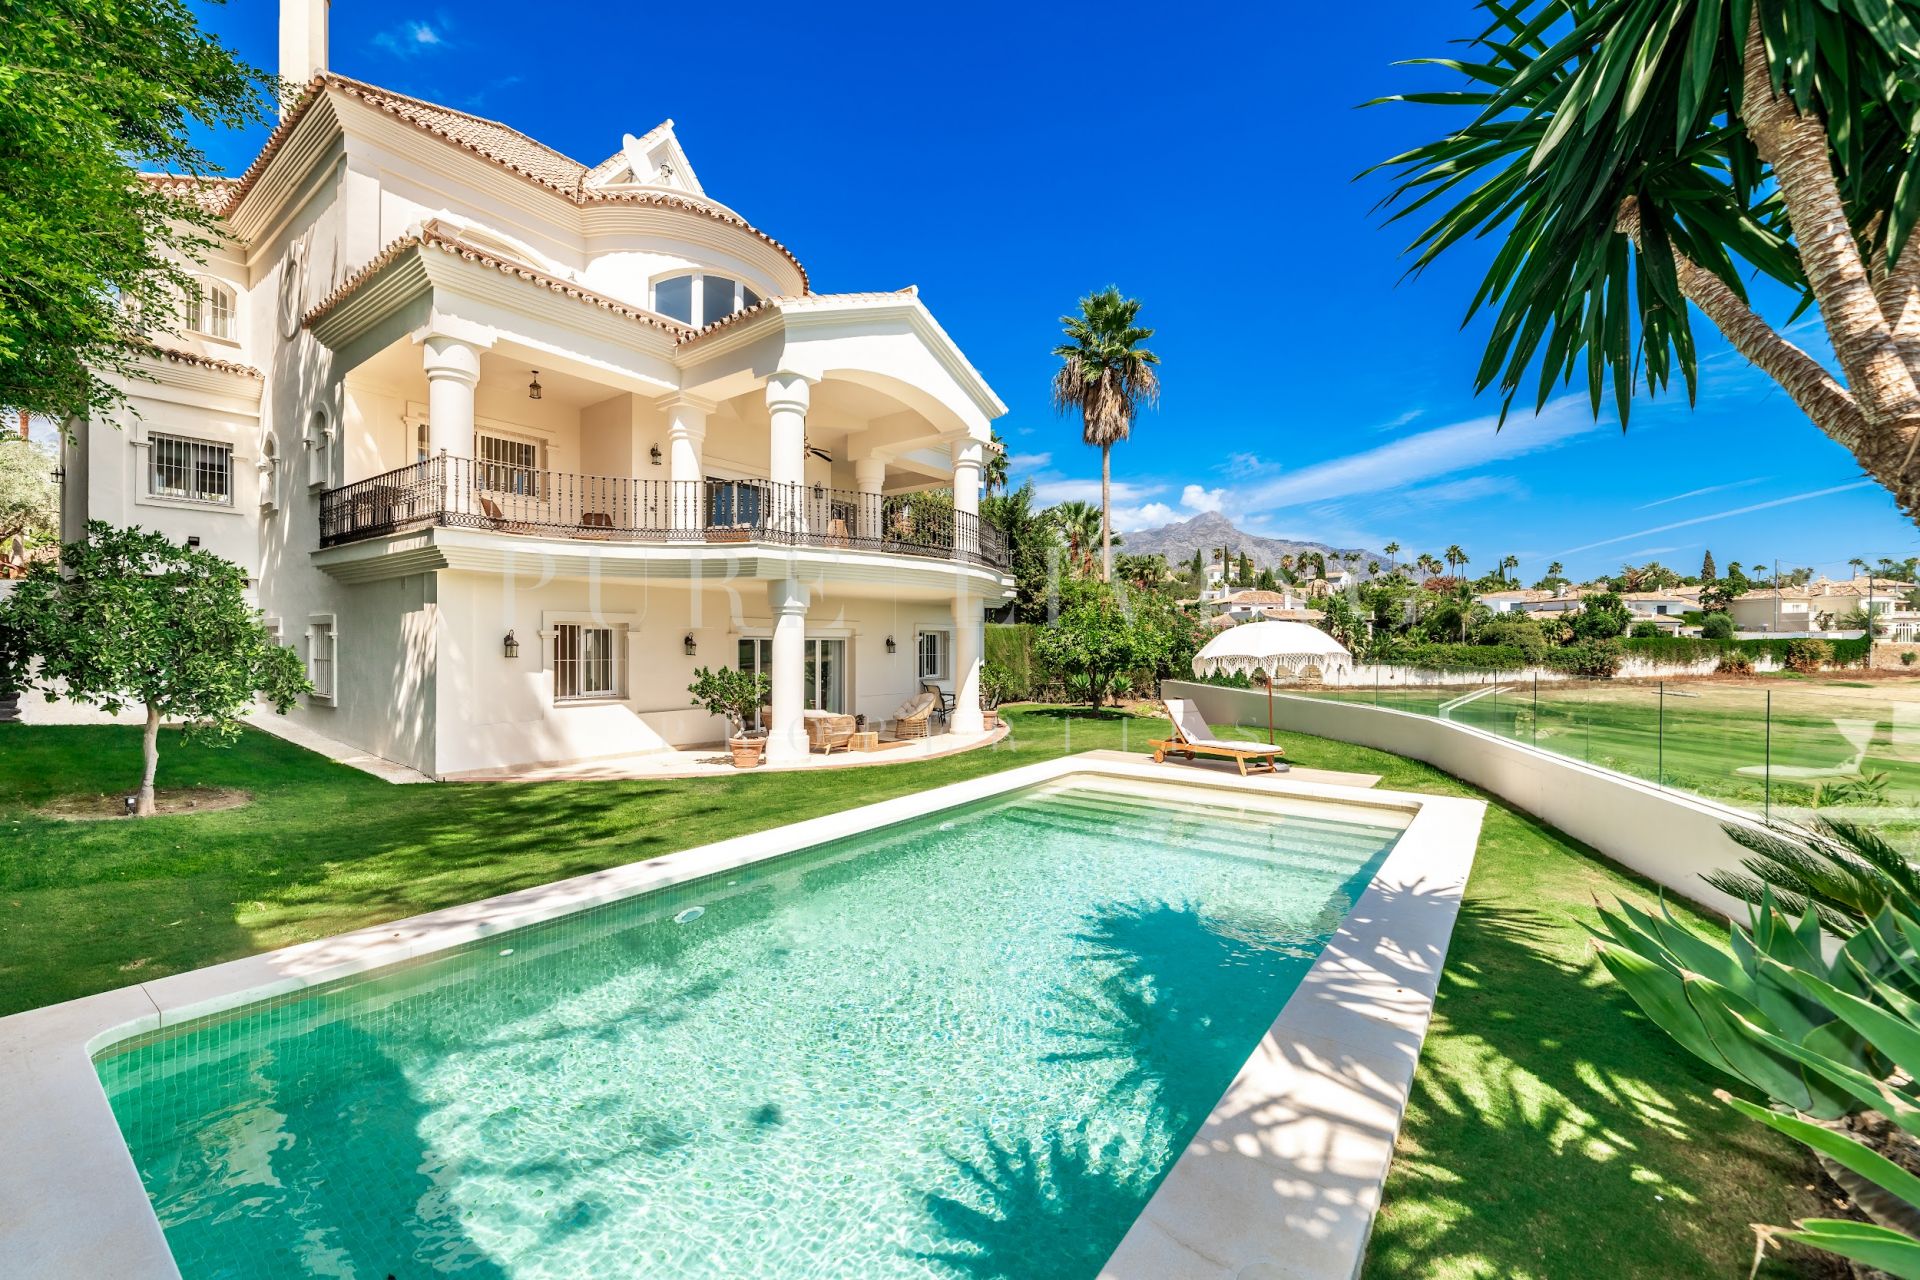 Villa de luxe avec sept chambres à coucher dans la prestigieuse Nueva Andalucia.